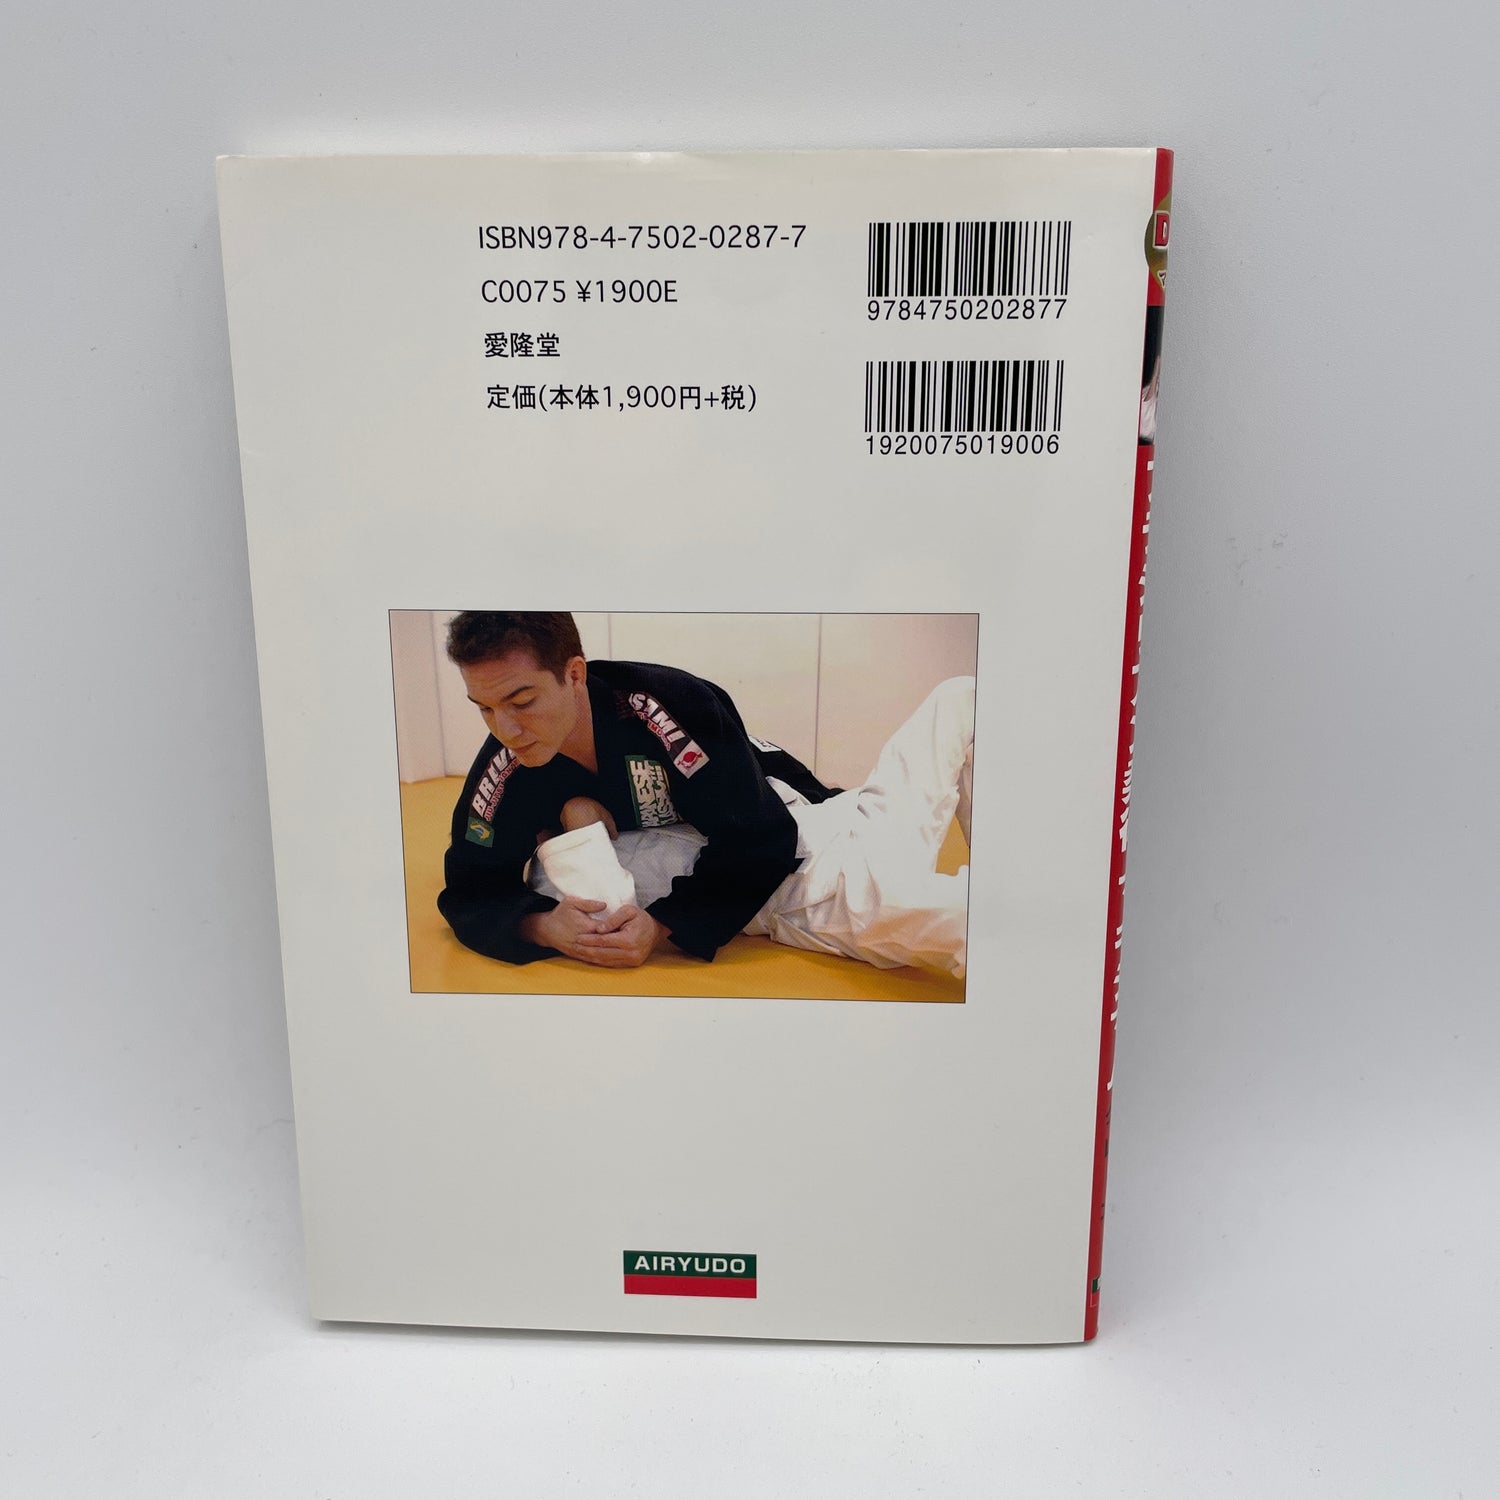 マキシマム BJJ Book & DVD by Alberto Crane (中古品)